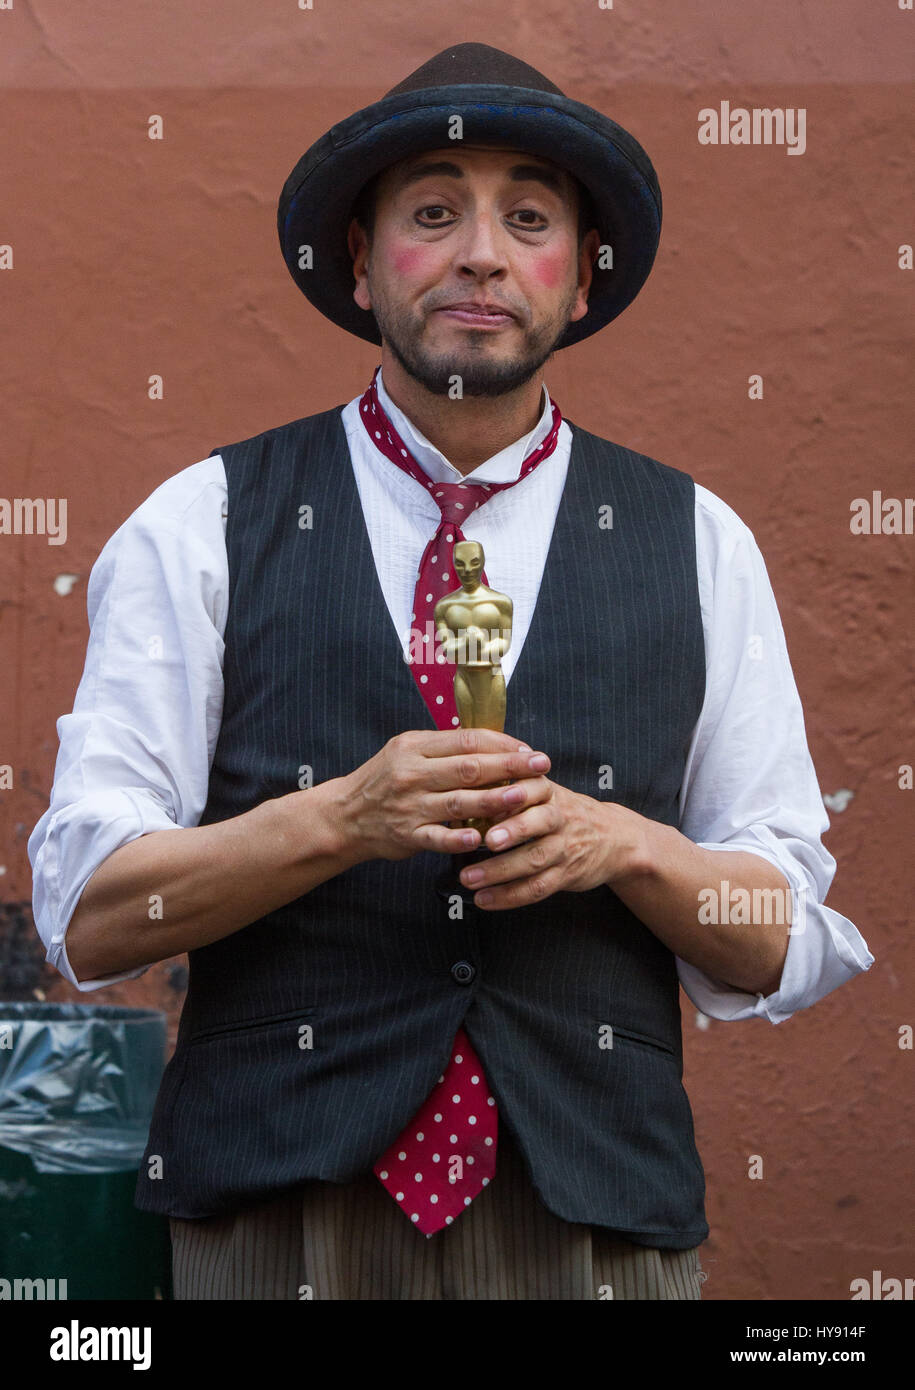 An actor showing a fake Oscar Statue Award Stock Photo